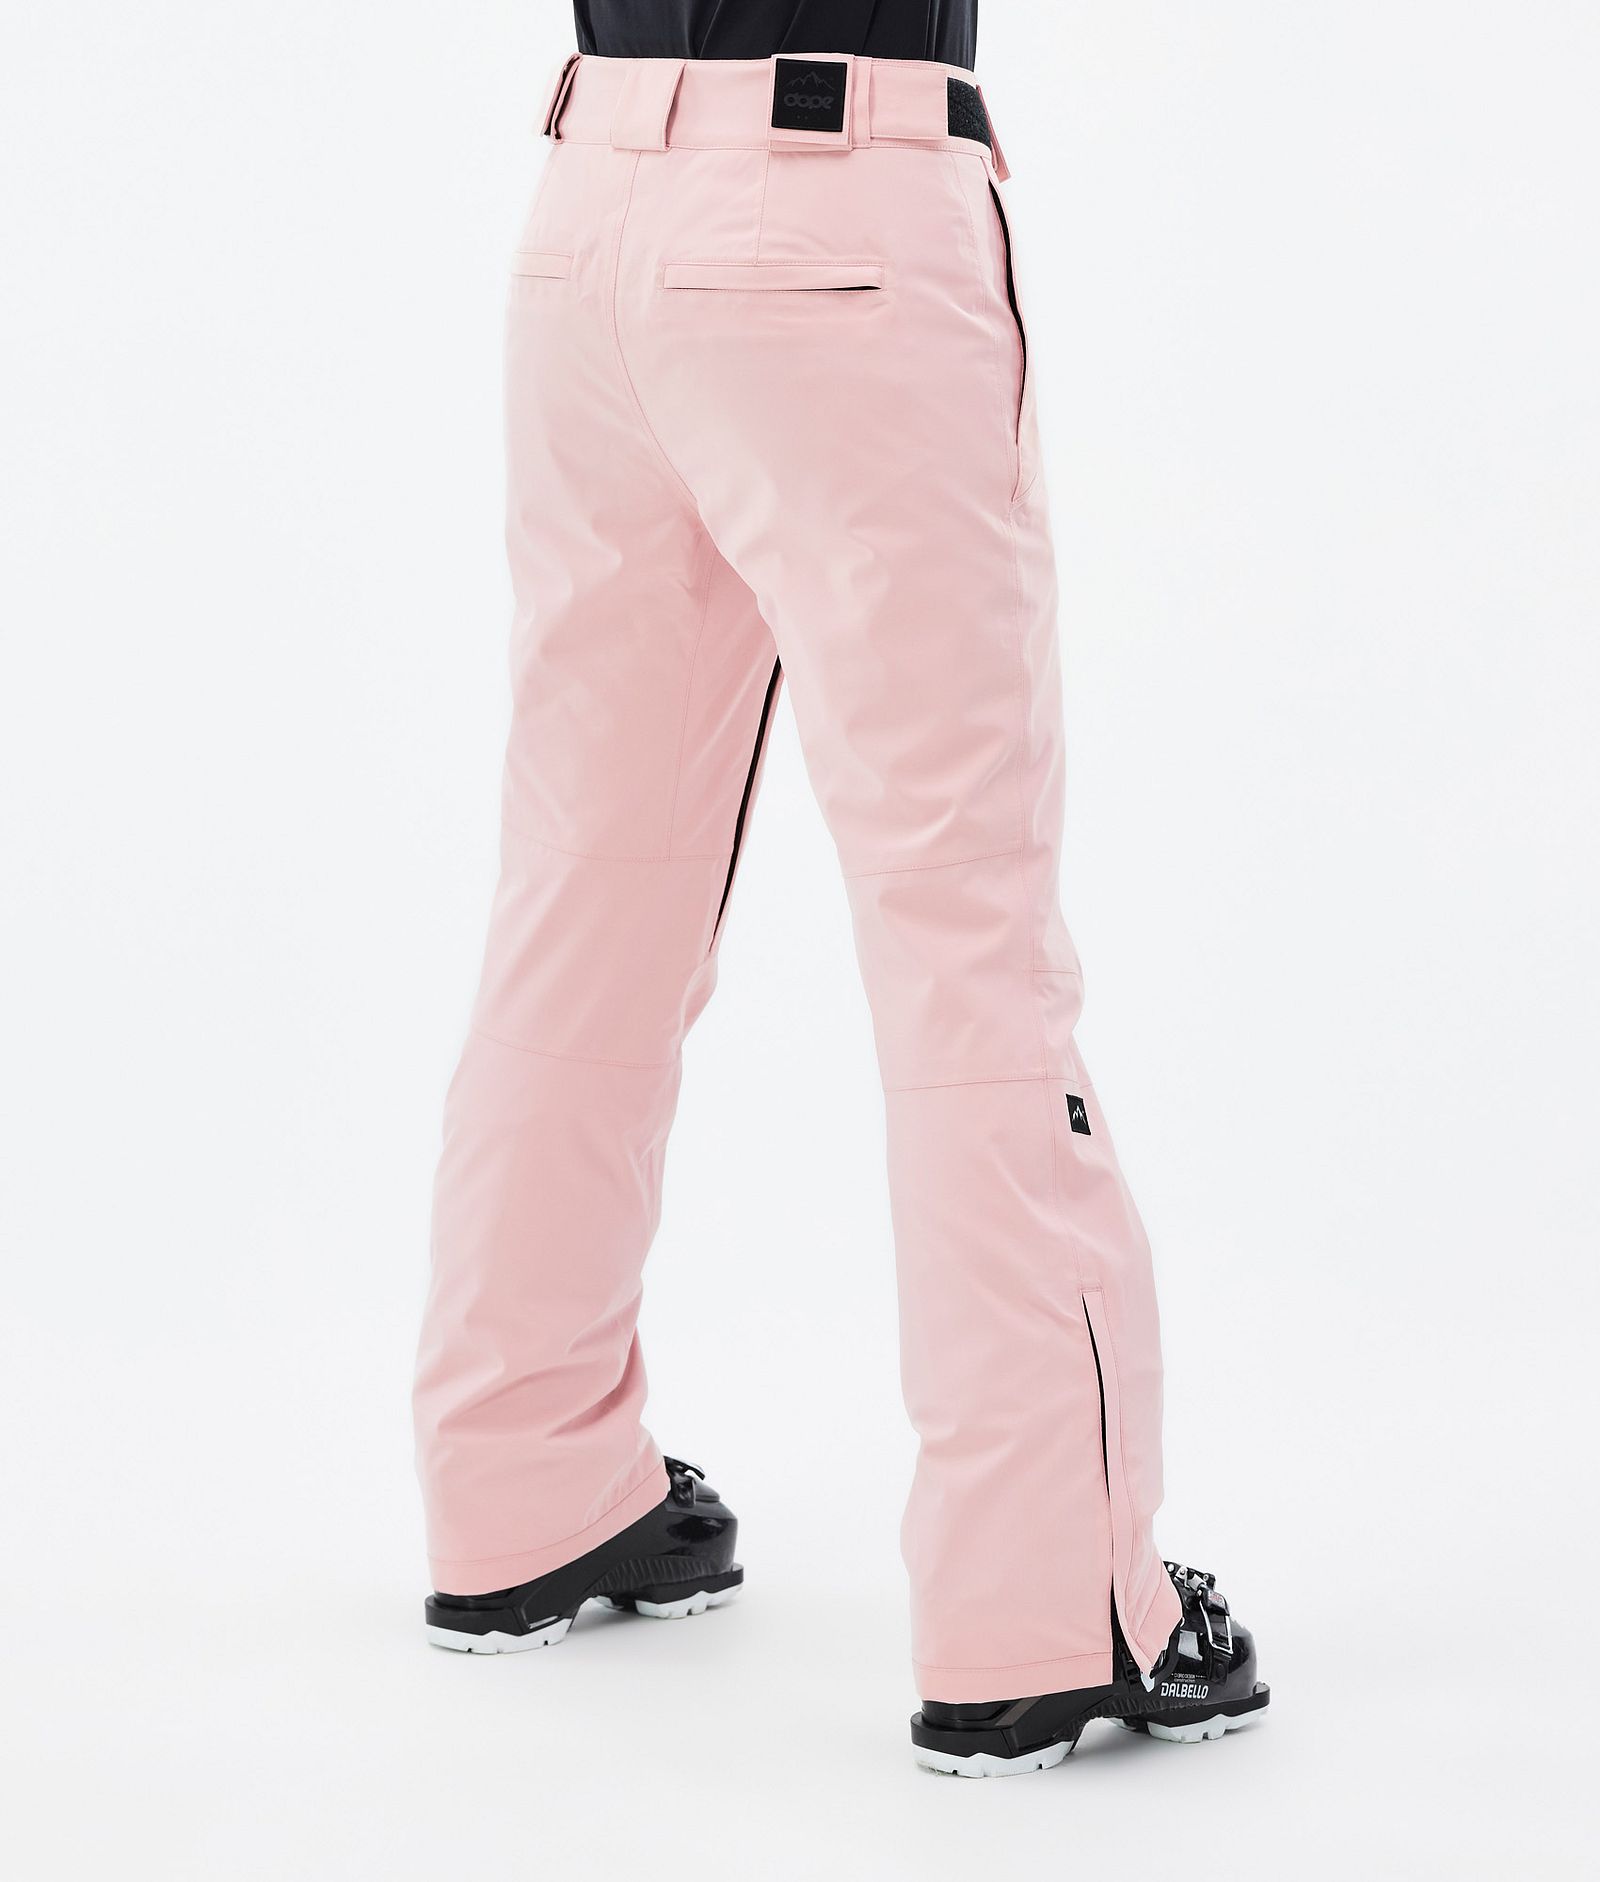 Con W 2022 Ski Pants Women Soft Pink